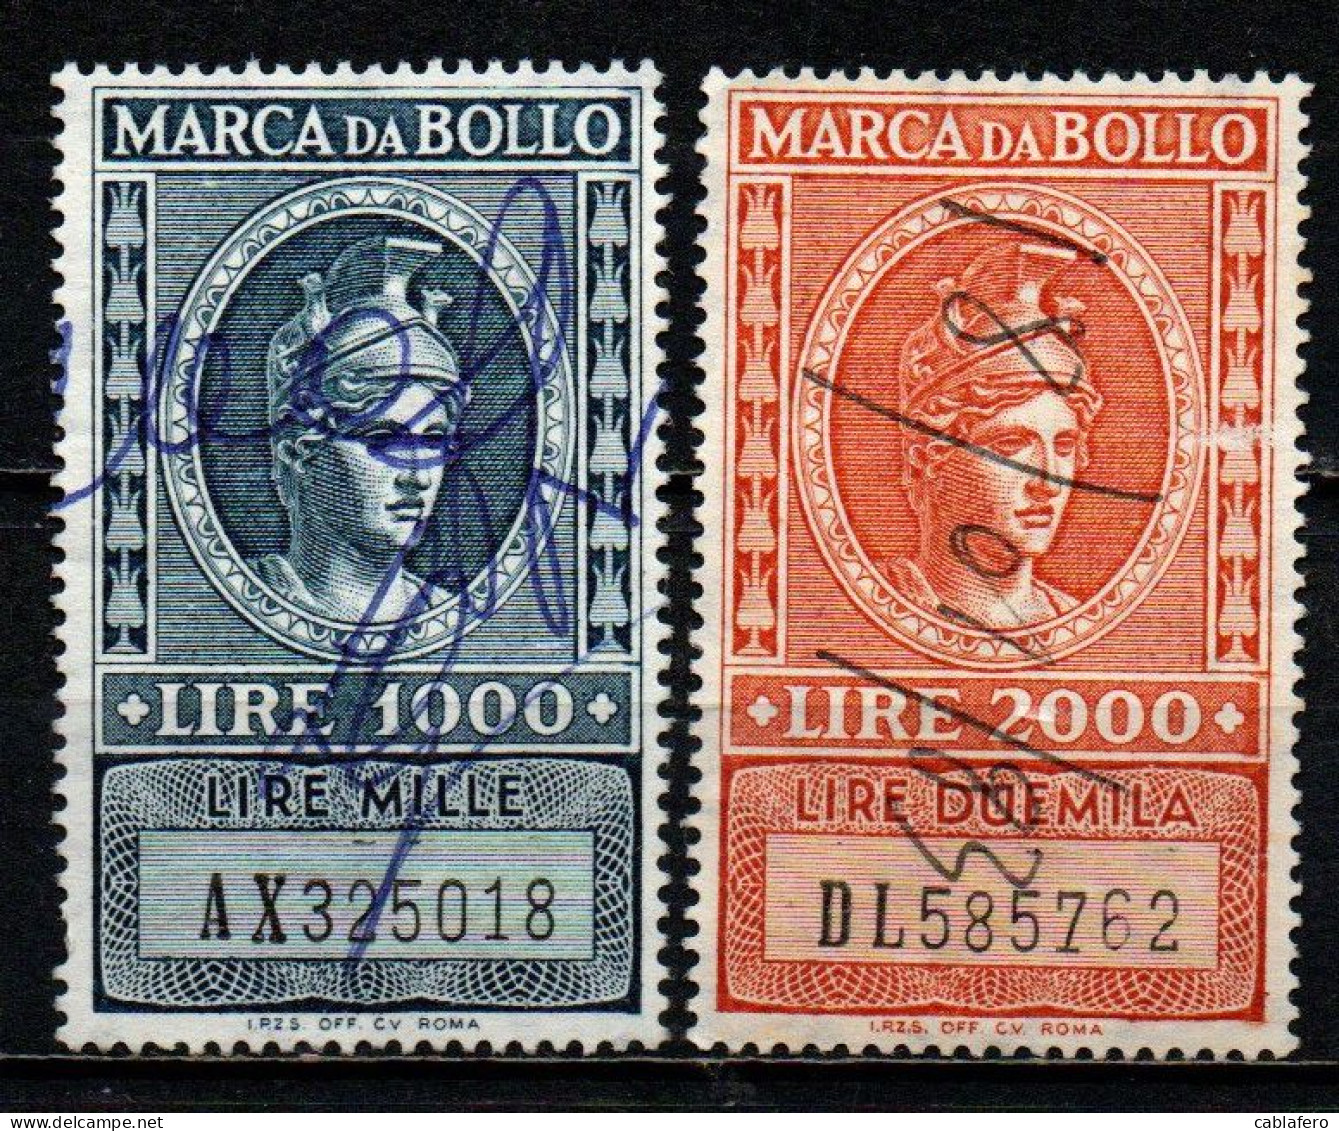 ITALIA REPUBBLICA - 1959 - MARCA DA BOLLO A TASSA FISSA - FILIGRANA STELLA - NUOVO FORMATO - USATI - Revenue Stamps